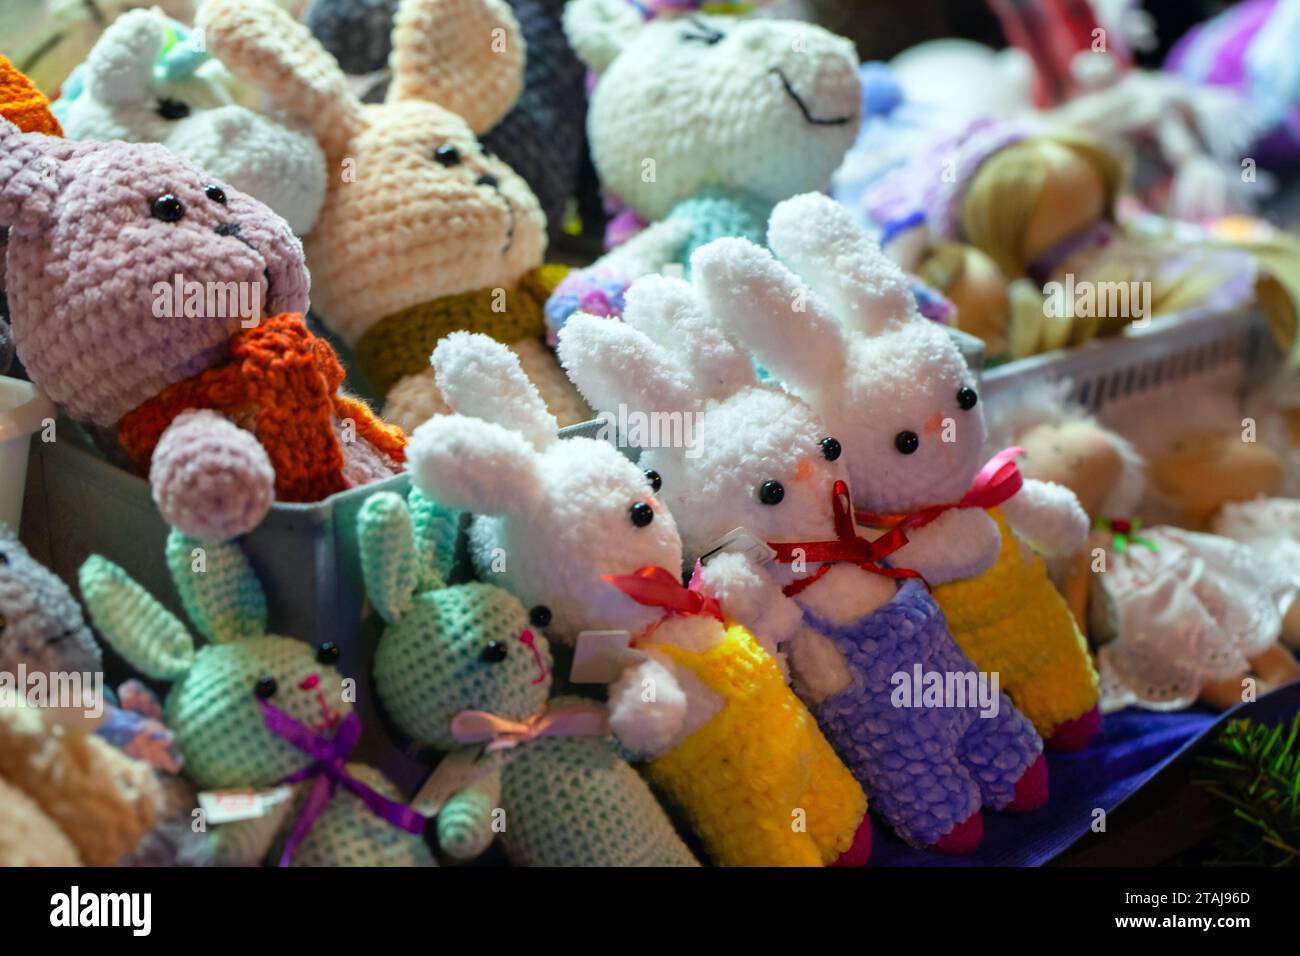 Bunte Kaninchen, handgefertigte Strickspielzeuge liegen auf der Theke in einem Souvenirladen Stockfoto